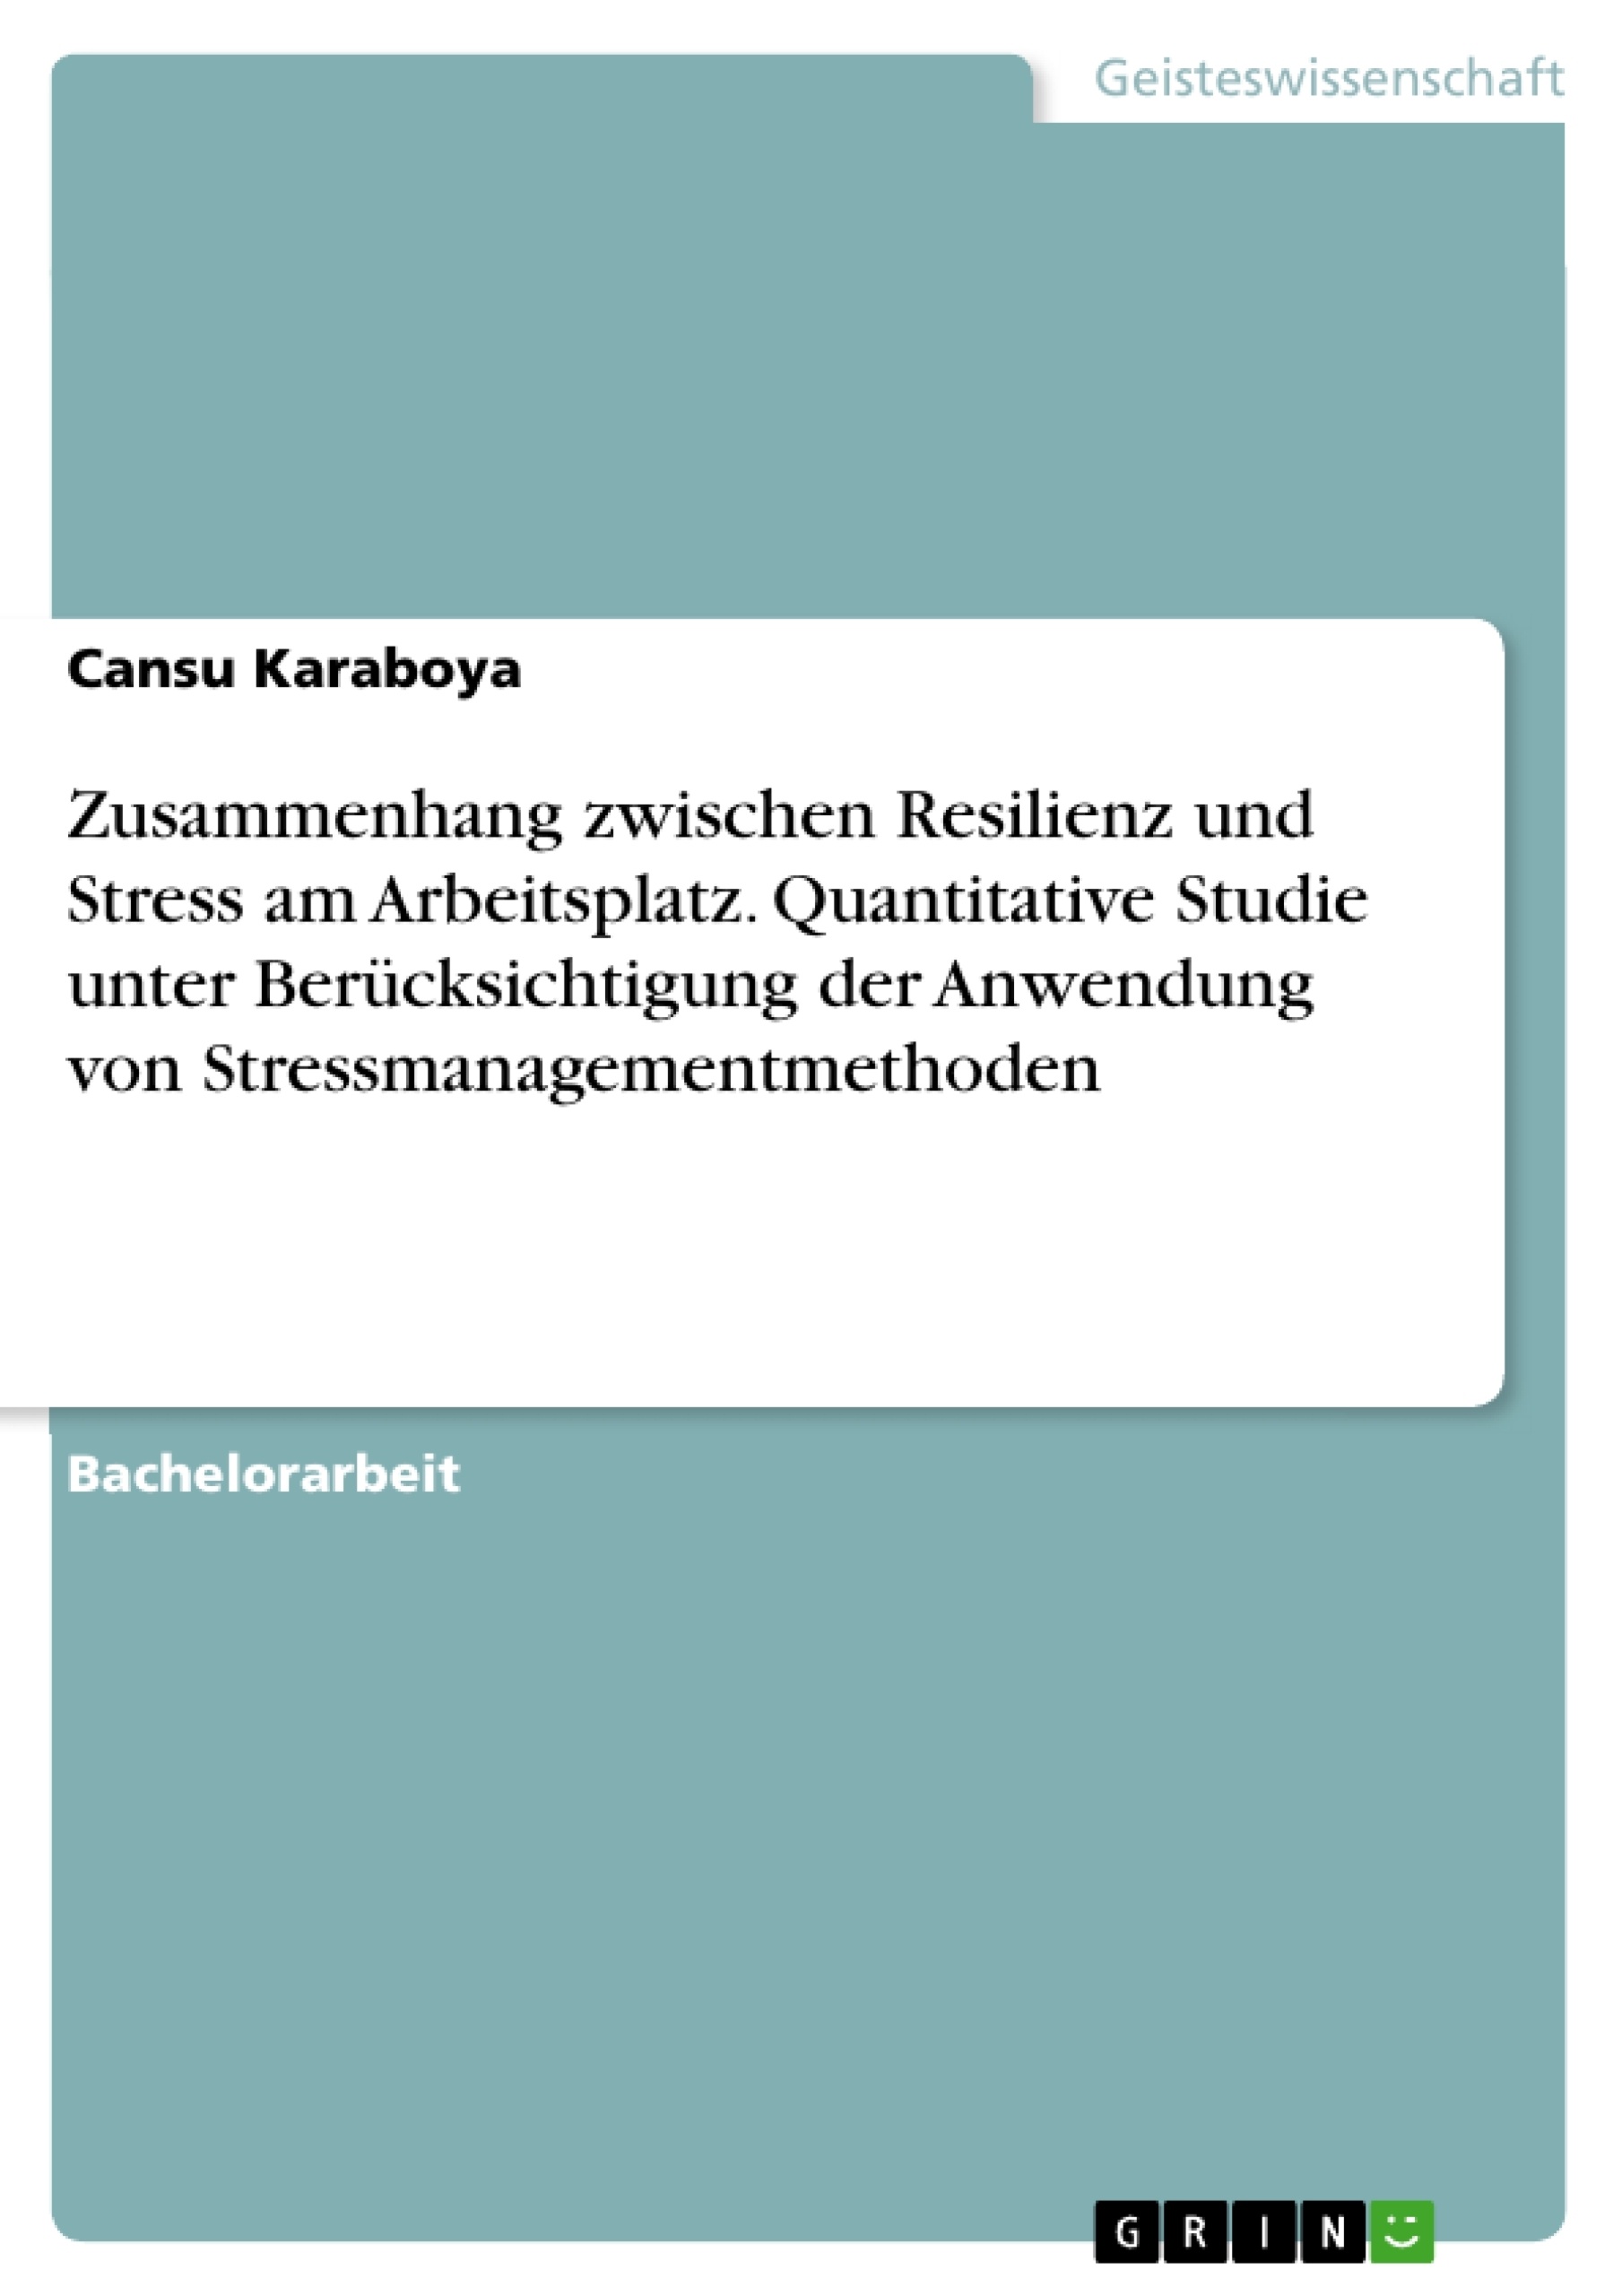 Titel: Zusammenhang zwischen Resilienz und Stress am Arbeitsplatz. Quantitative Studie unter Berücksichtigung der Anwendung von Stressmanagementmethoden